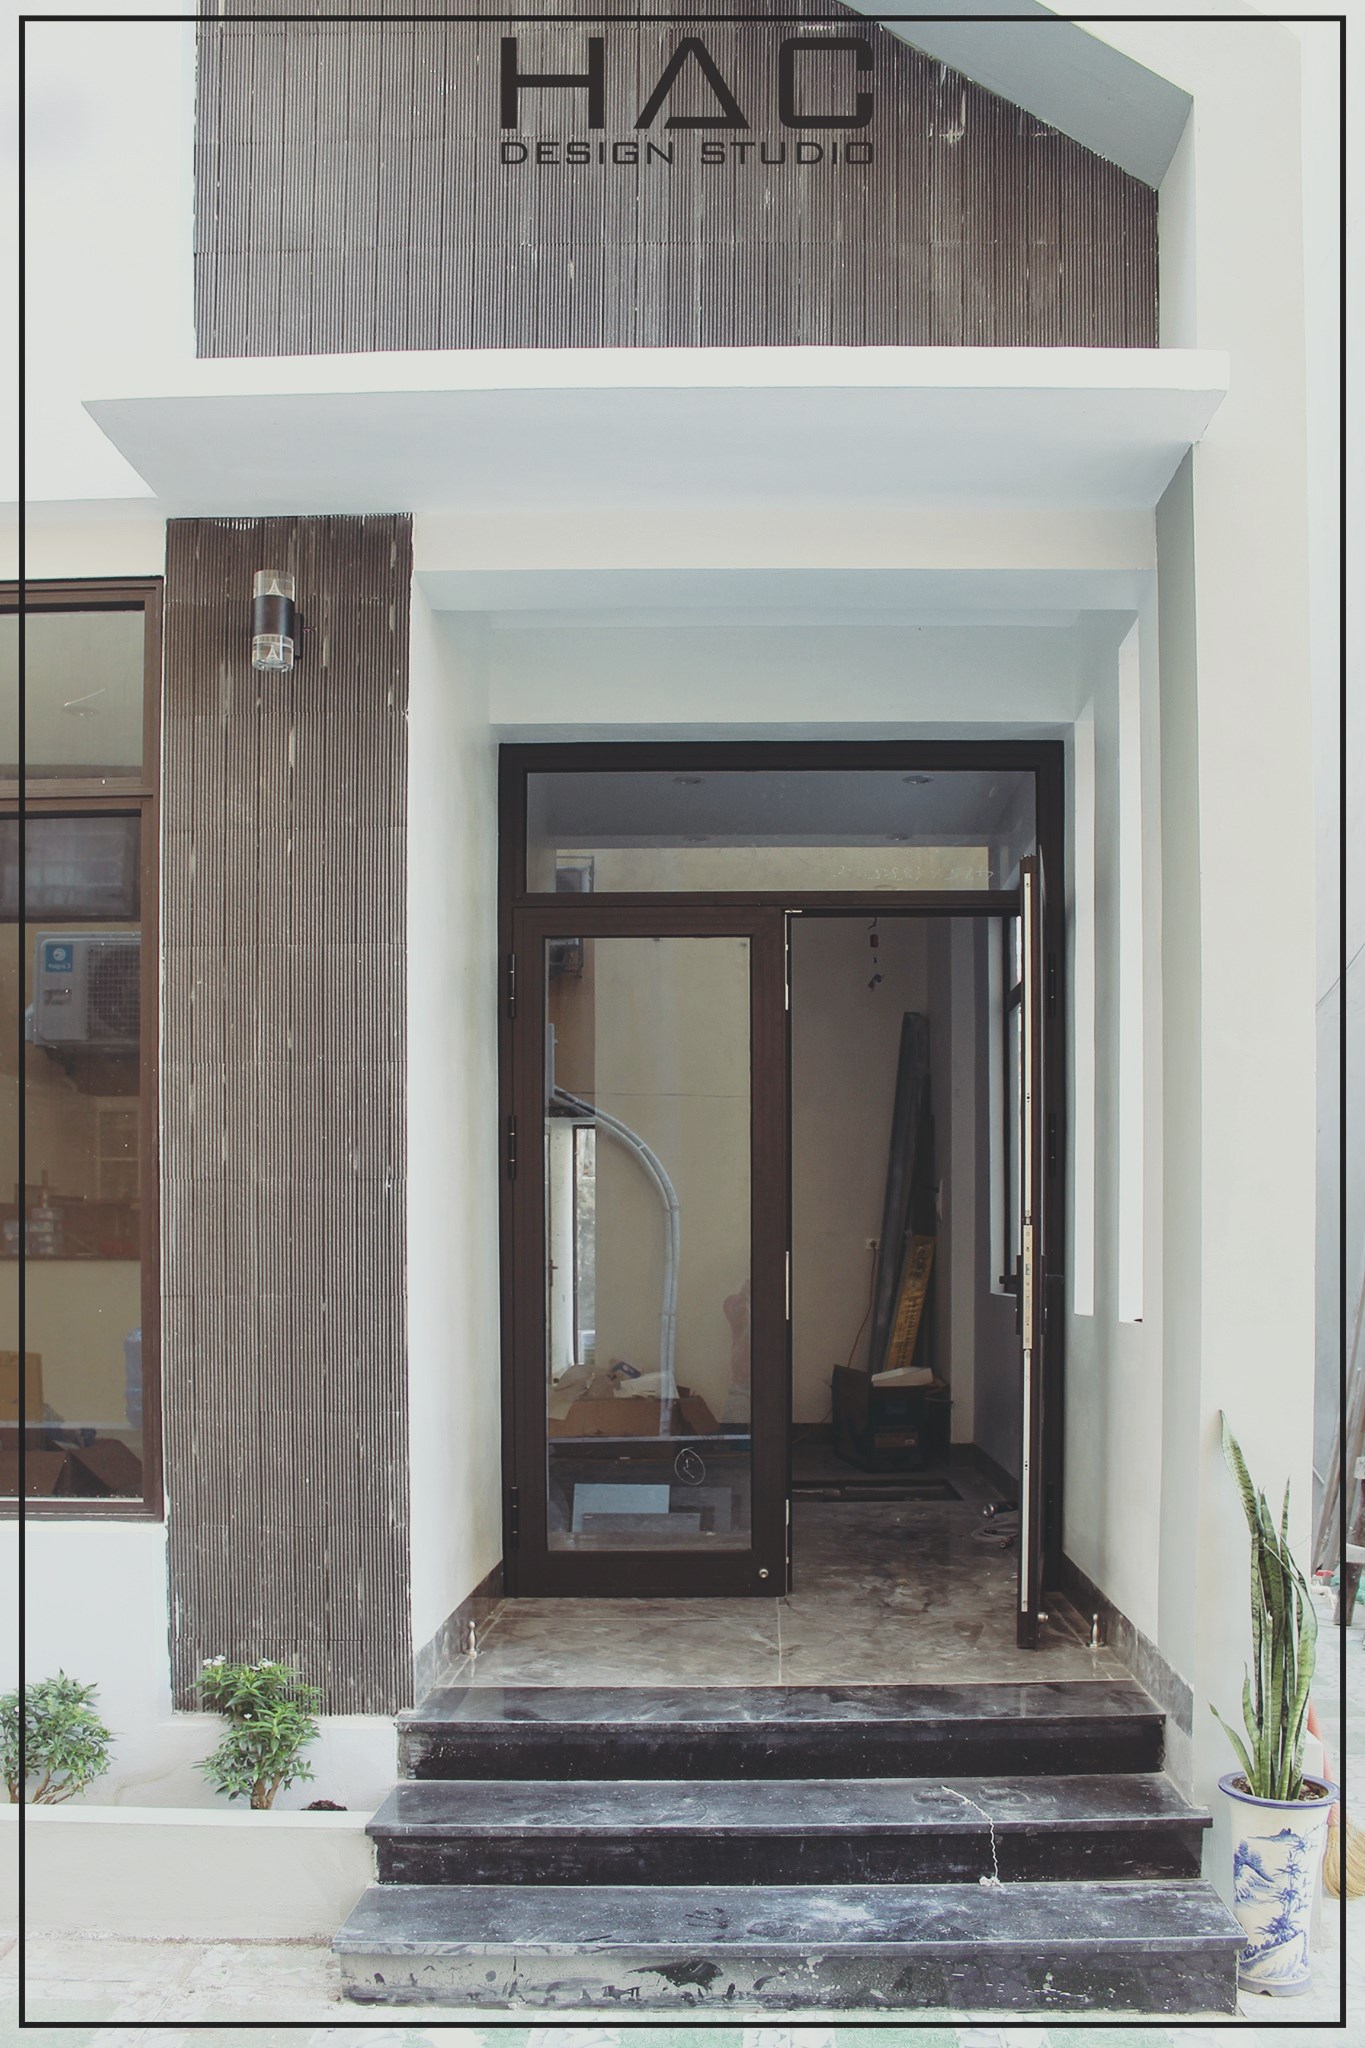 Thiết kế Nhà tại Quảng Ninh Thiết kế thi công kiến trúc - nội thất nhà nhỏ tại Bãi Cháy - Quảng Ninh 1600234448 0